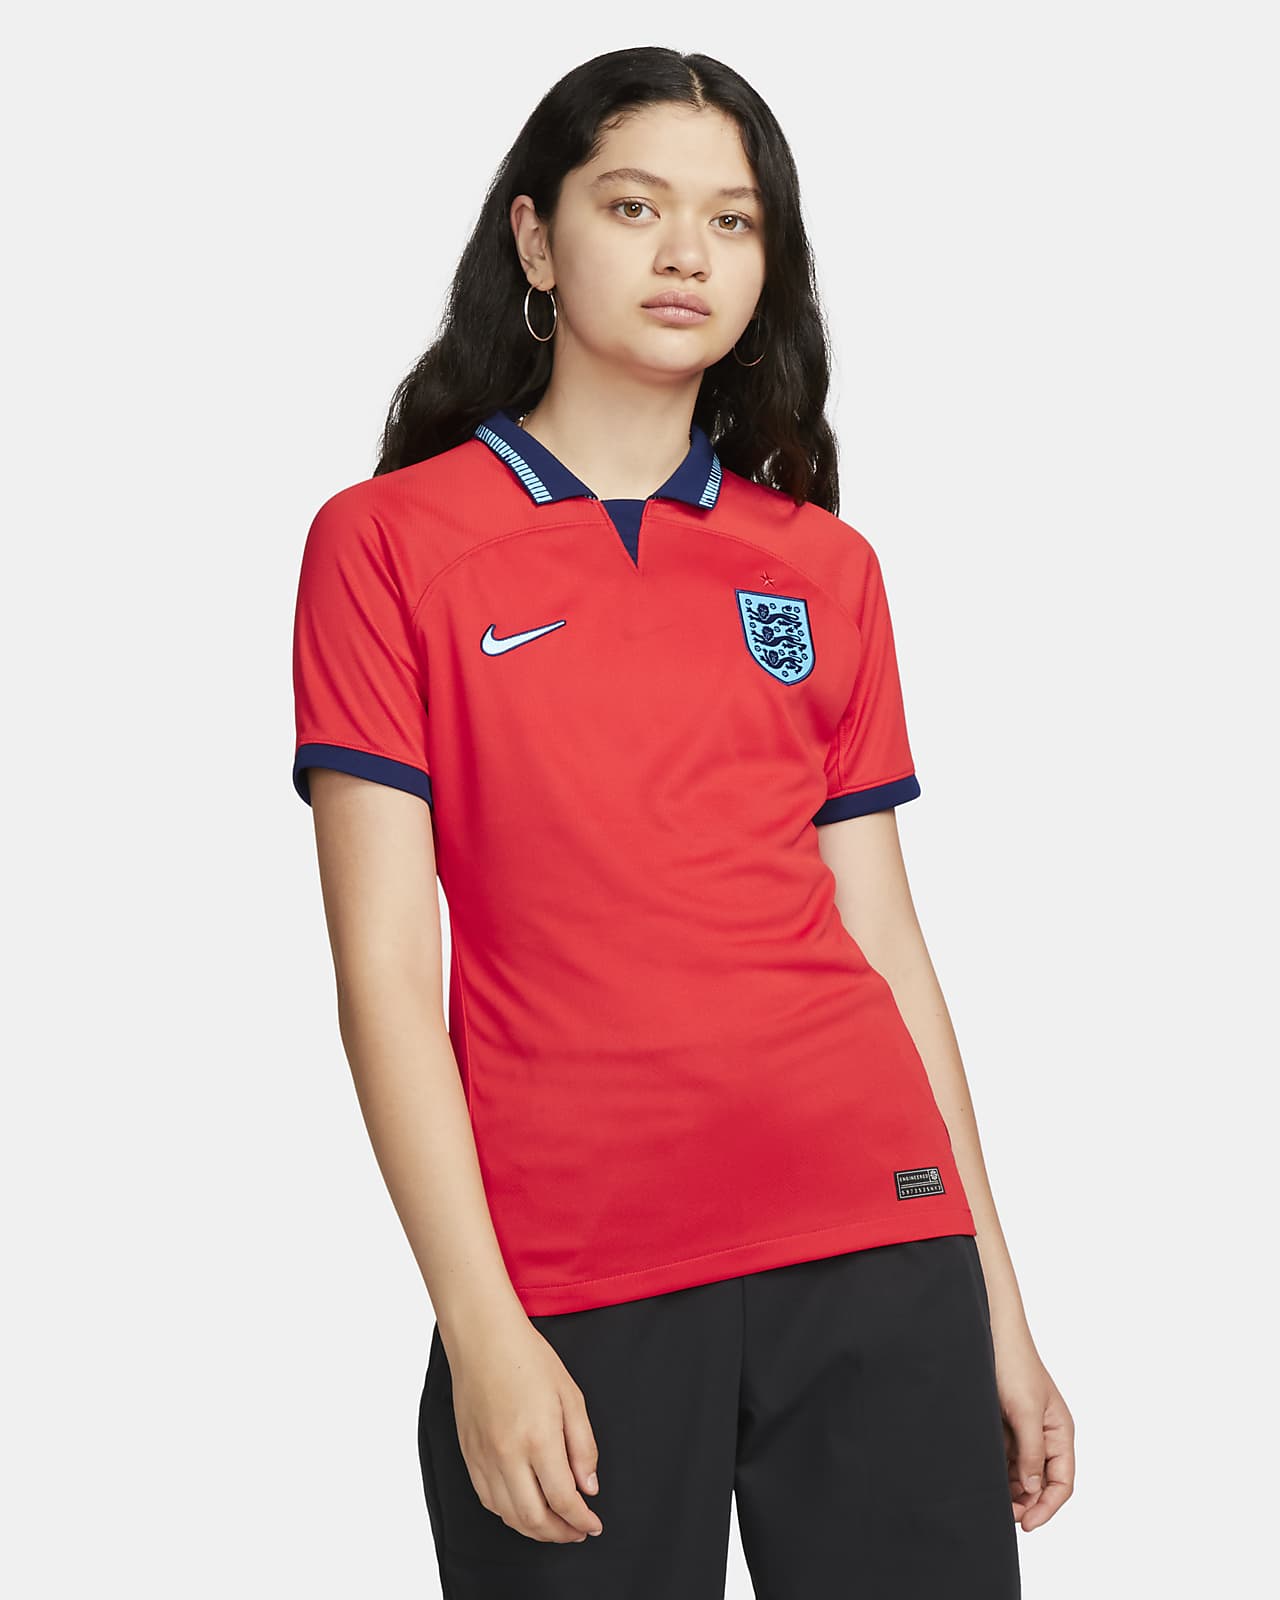 Γυναικεία ποδοσφαιρική φανέλα Nike Dri-FIT εκτός έδρας Αγγλία 2022/23 Stadium